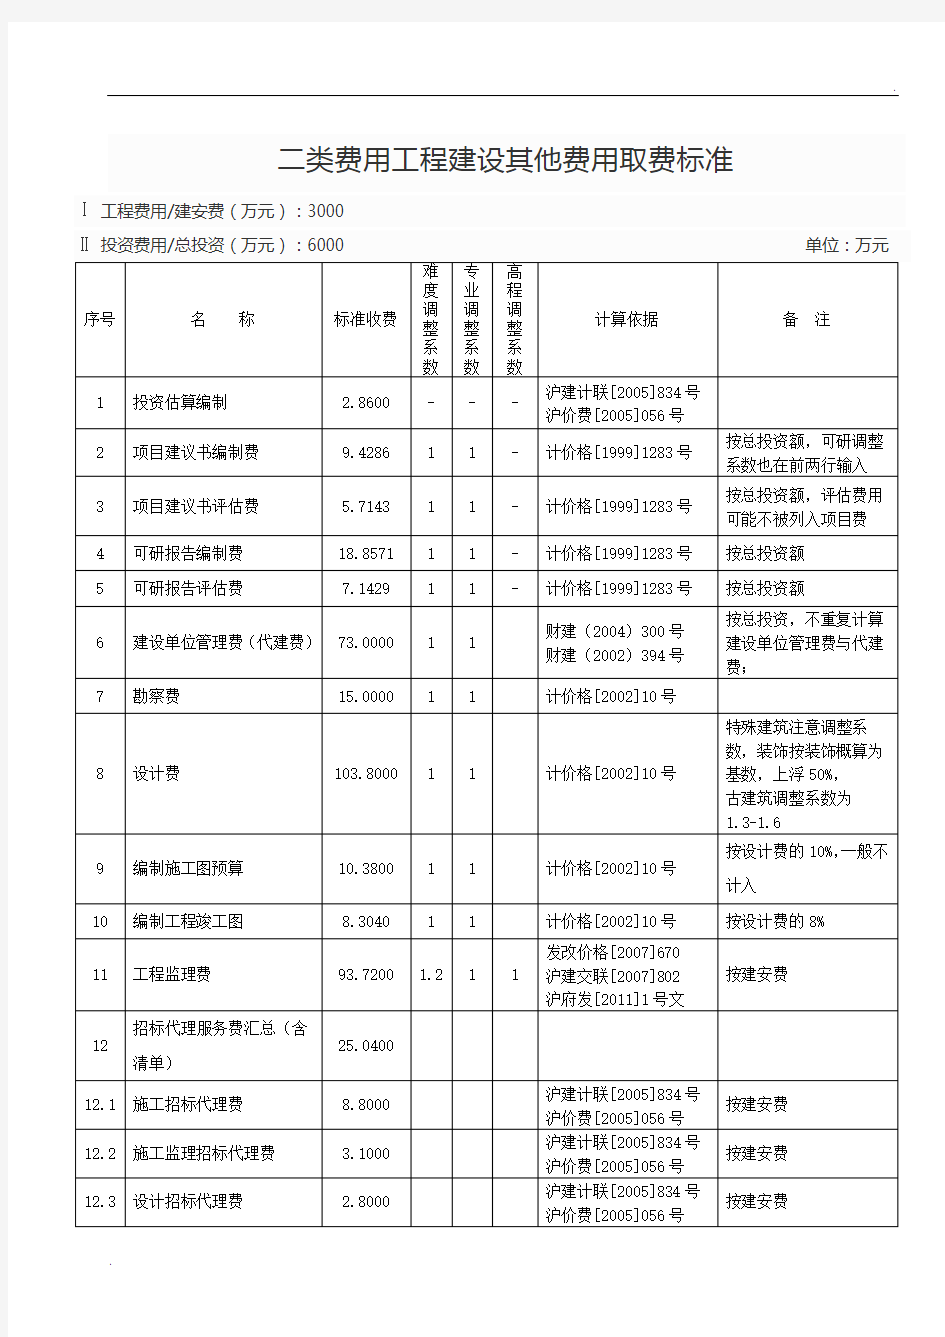 二类费用_工程建设其他费用取费标准集合(上海市_2012年版)